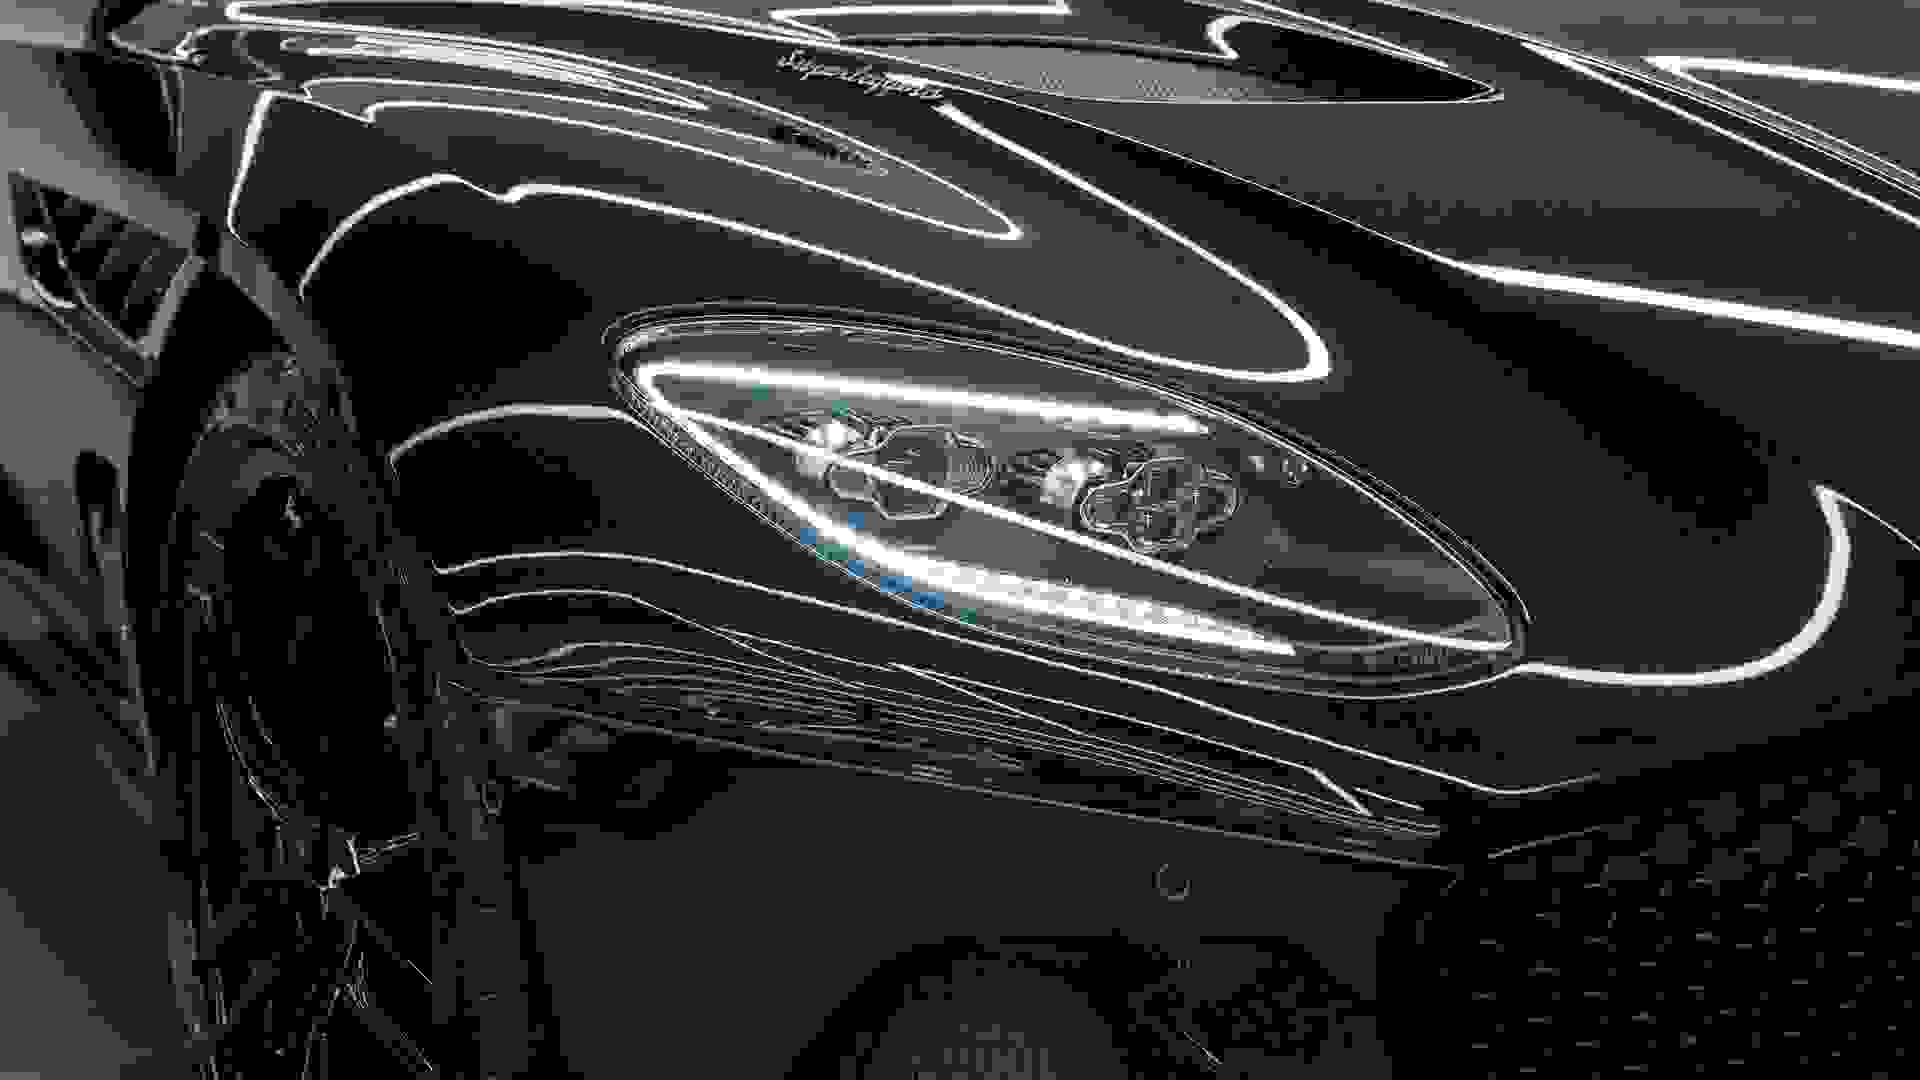 Aston Martin DBS SUPERLEGGERA Photo f079a00c-d53b-463d-9683-7c75a8b072c5.jpg